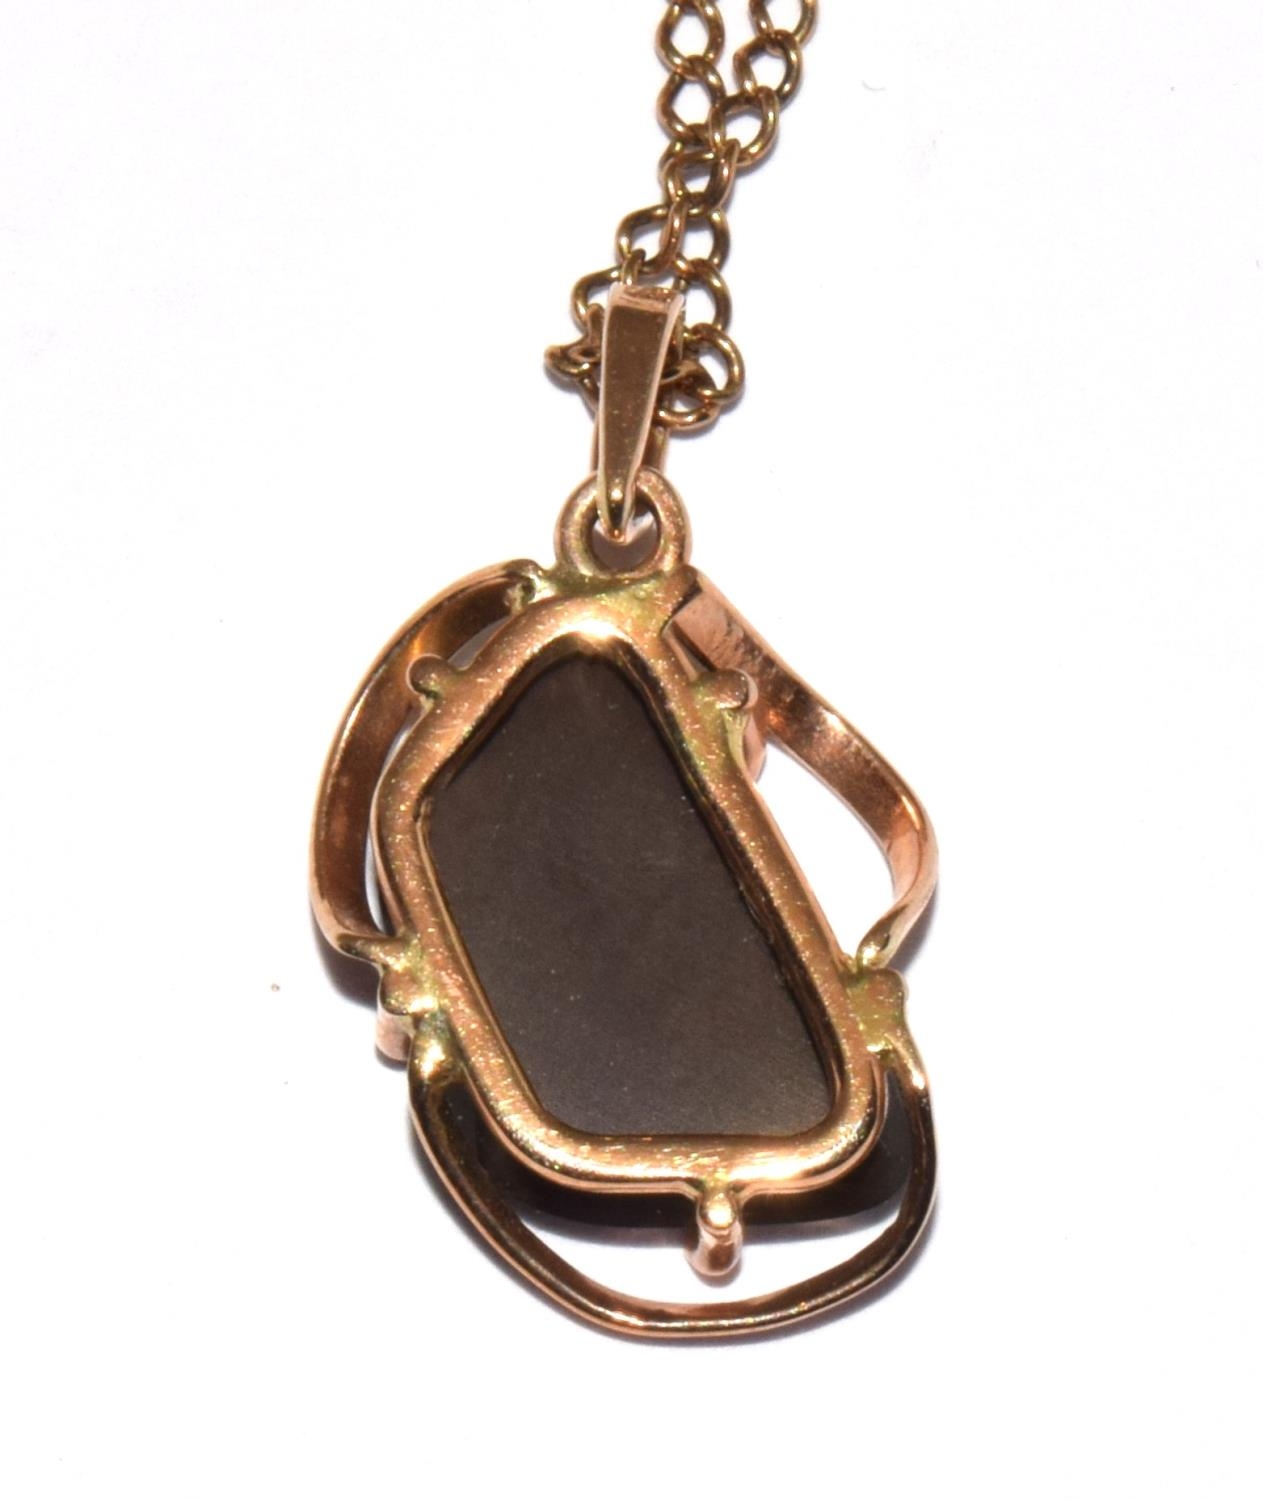 9ct gold Boulder Opal necklace pendant chain 54cm pendant 2.2cm - Image 4 of 6